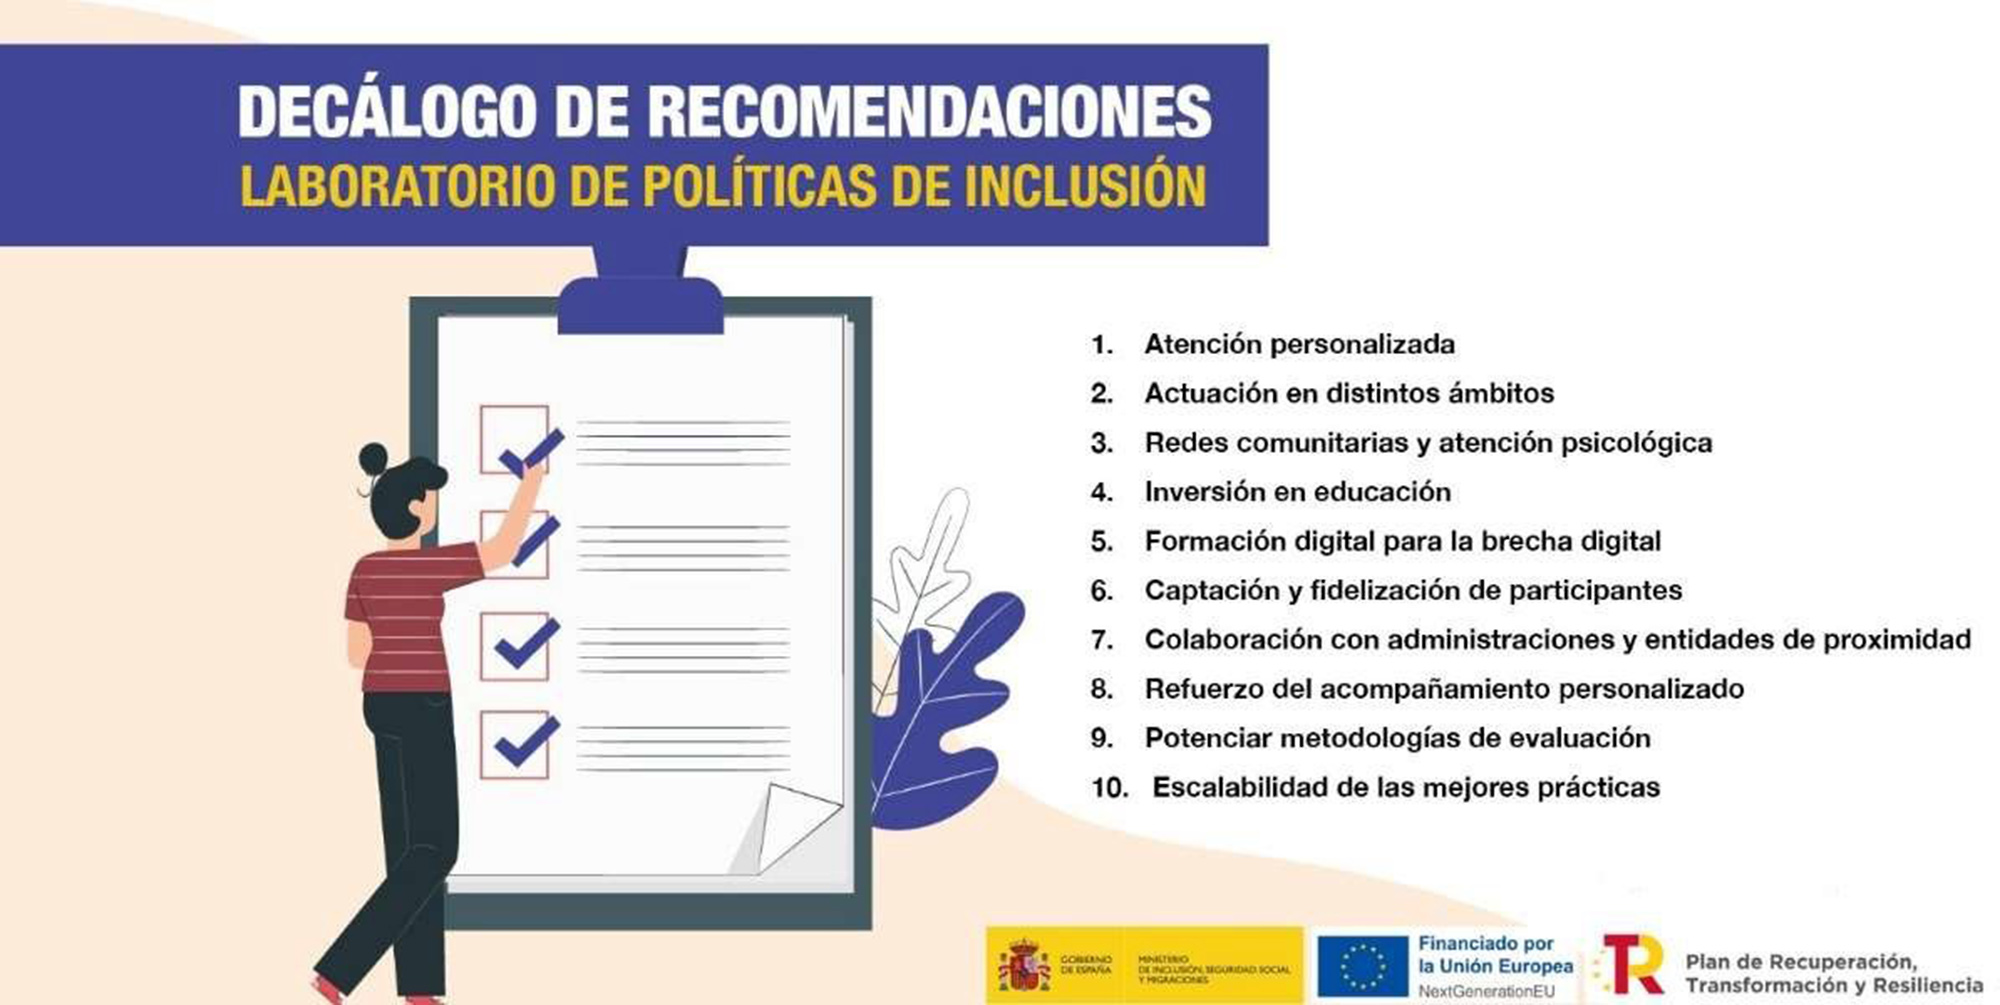 Decálogo de recomendaciones del Laboratorio de Políticas de Inclusión